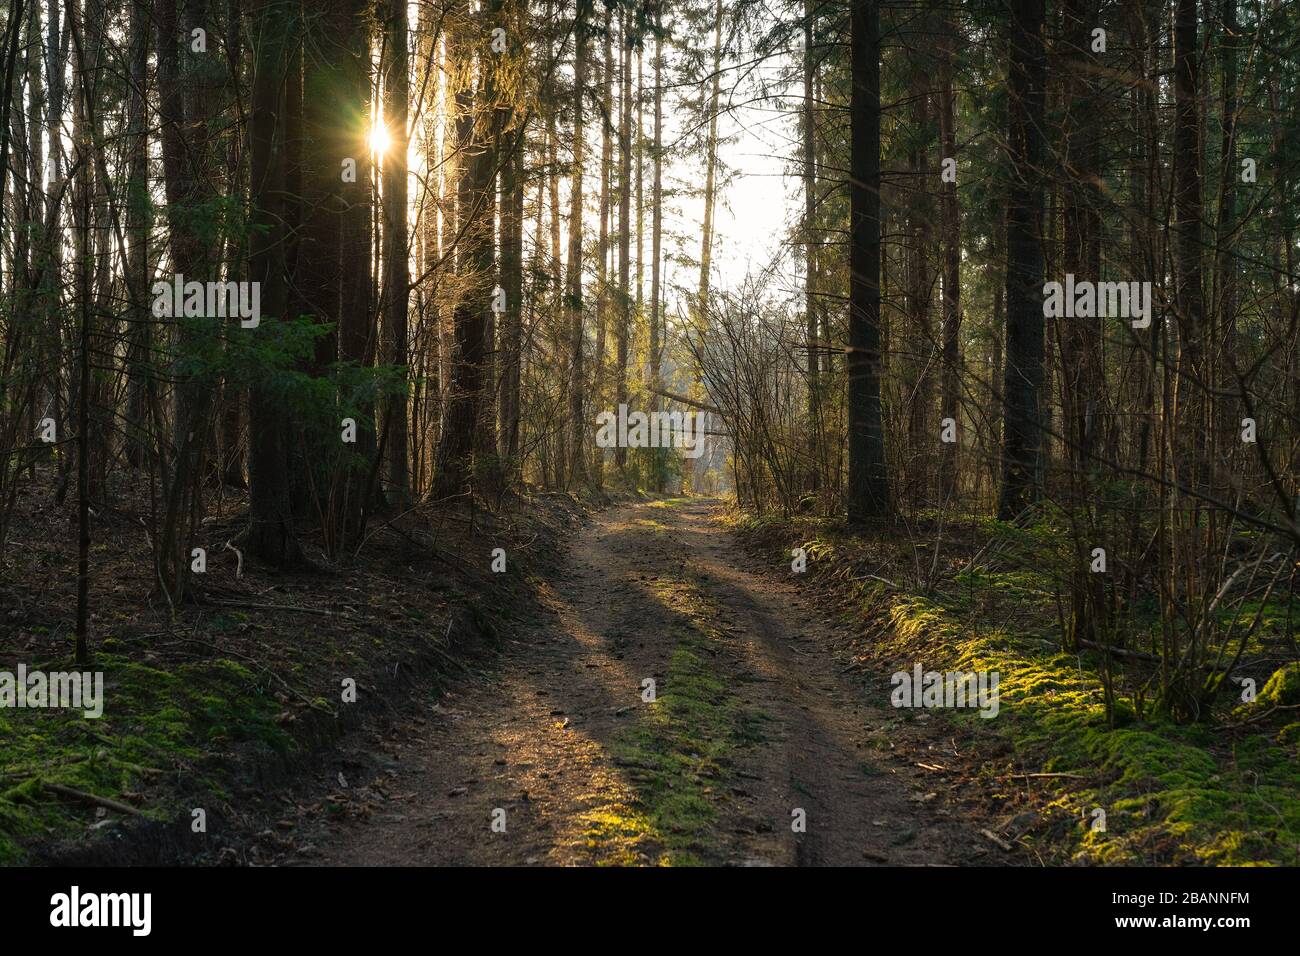 La foresta illuminata dal sole e il sentiero stretto di fronte alla luce la sera al tramonto in primavera. Immagine in Lituania, vicino alla capitale Vilnius Foto Stock